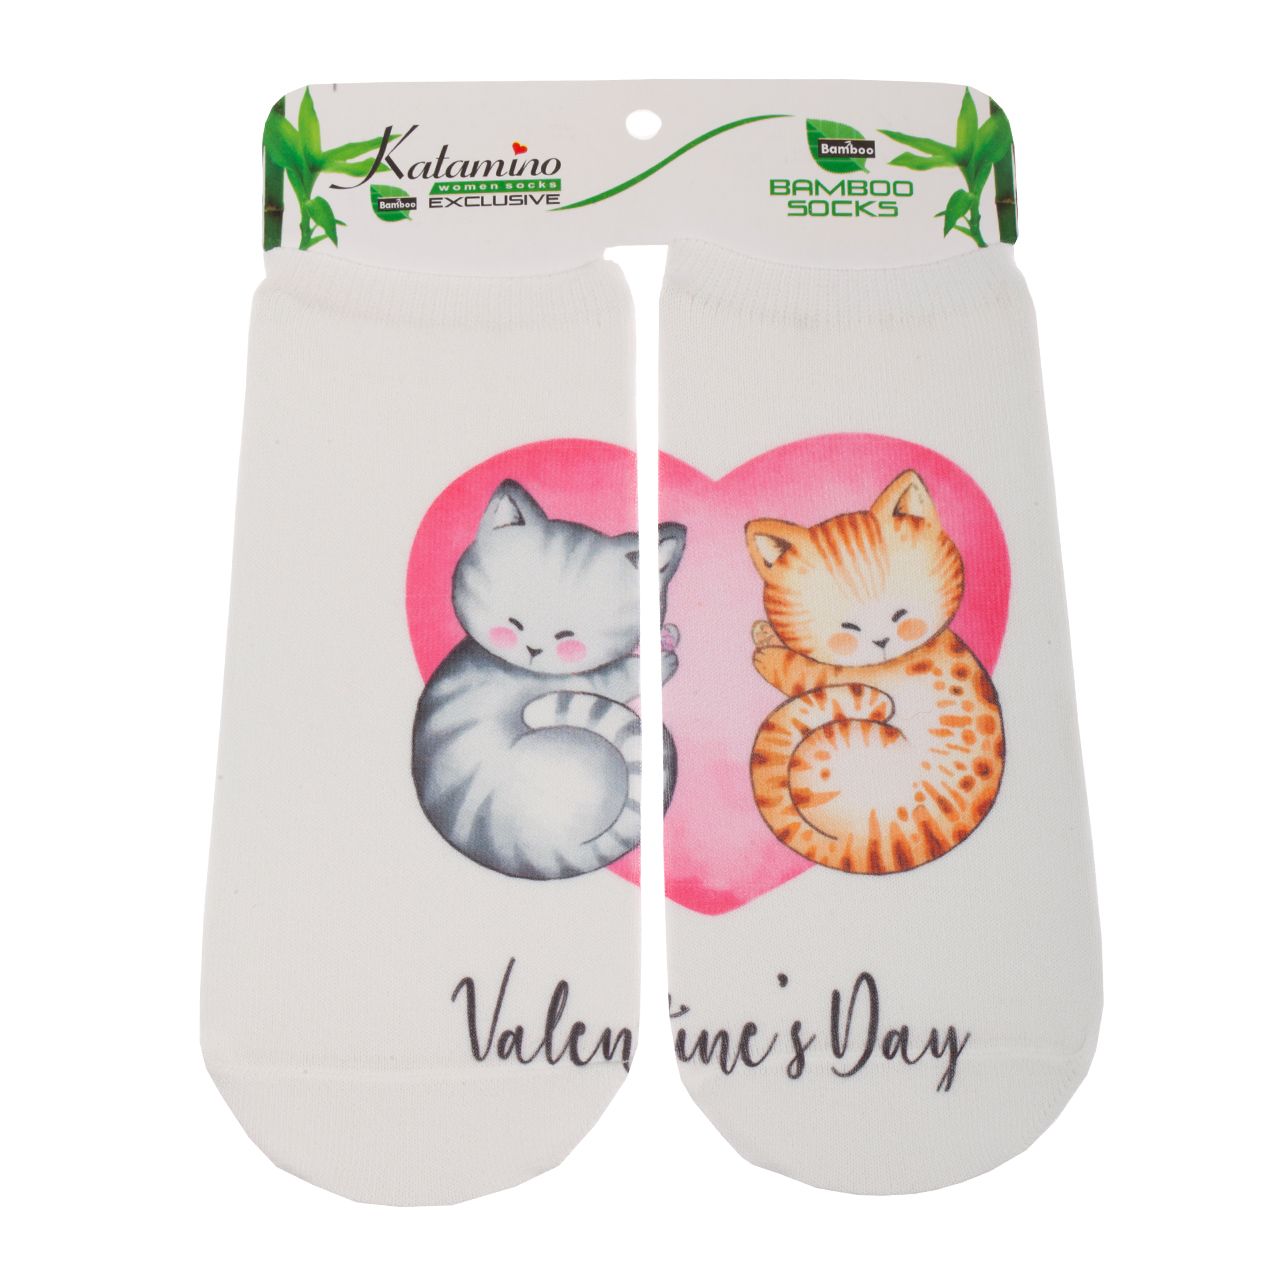 جوراب دخترانه کاتامینو طرح گربه های خوابالو  -  - 2